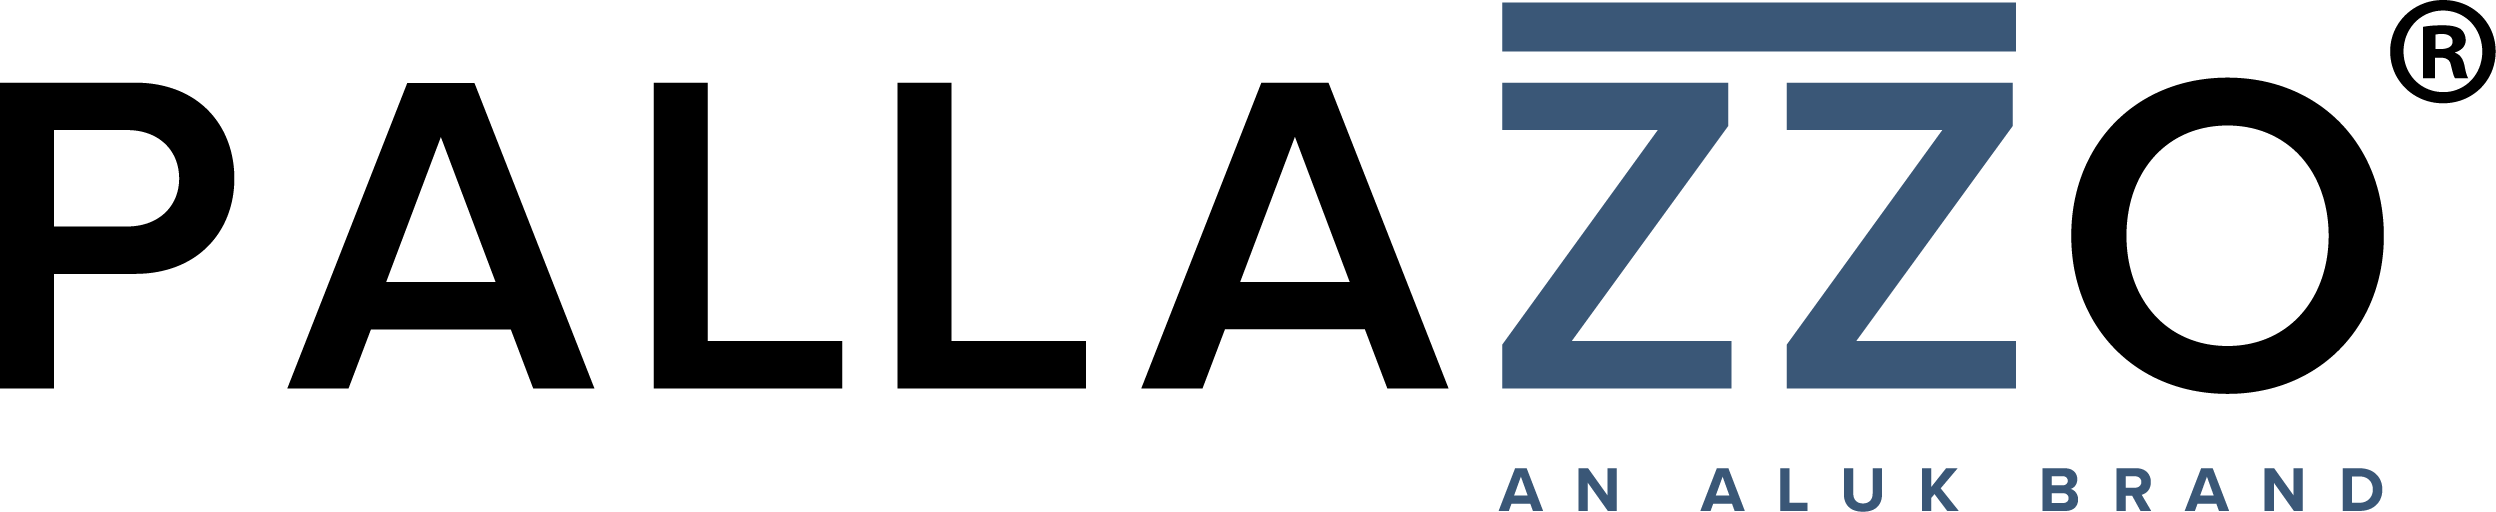 Pallazzo Logo